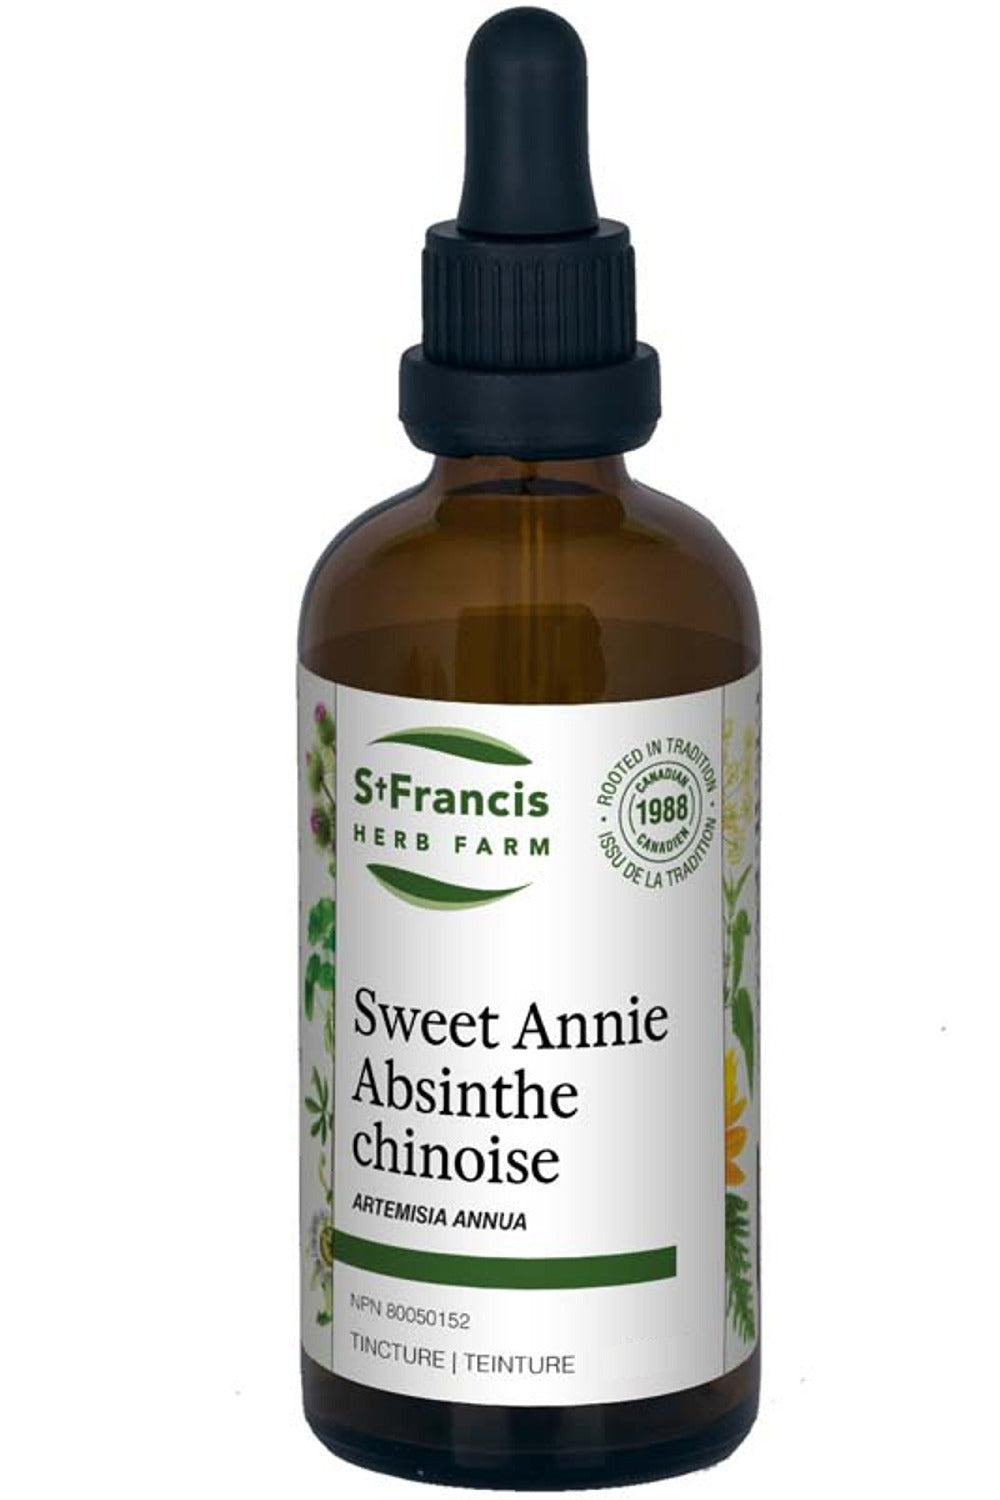 ST FRANCIS HERB FARM Sweet Annie (50 ml)